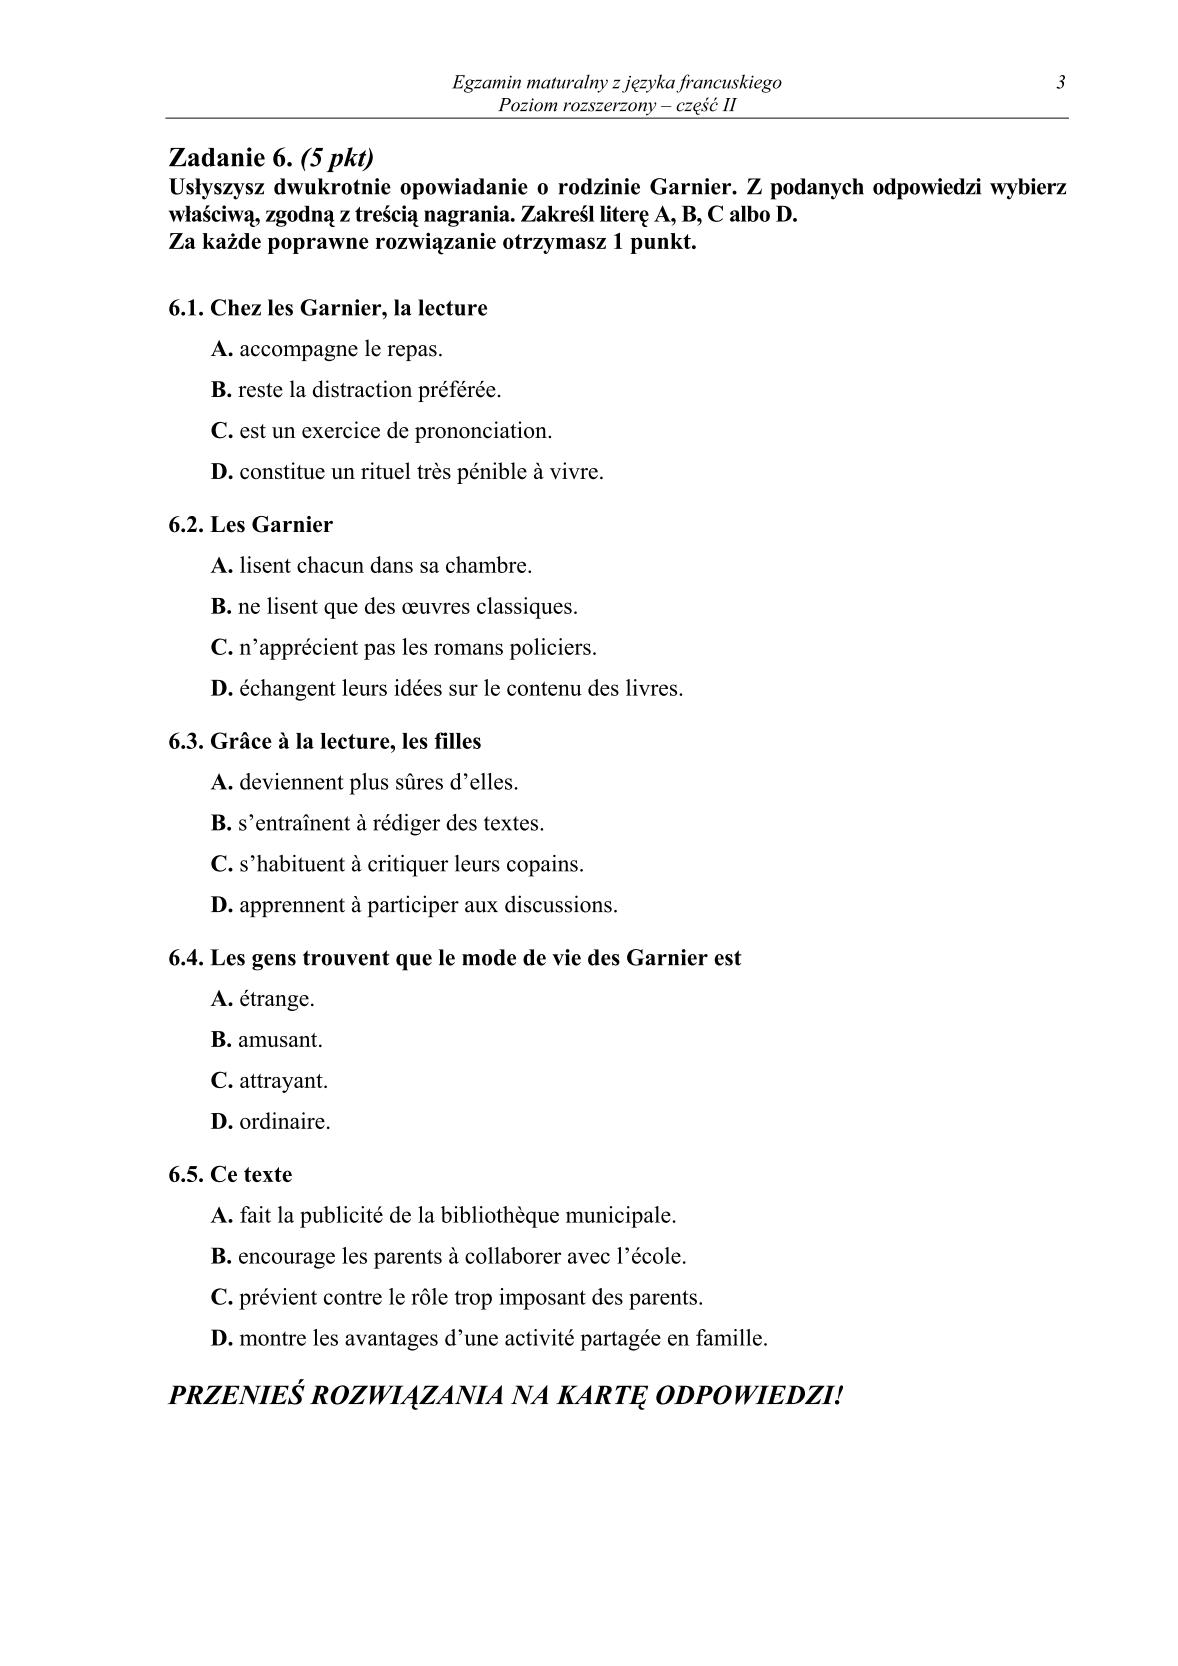 pytania-jezyk-francuski-poziom-rozszerzony-czesc-II-matura-2014-str.3